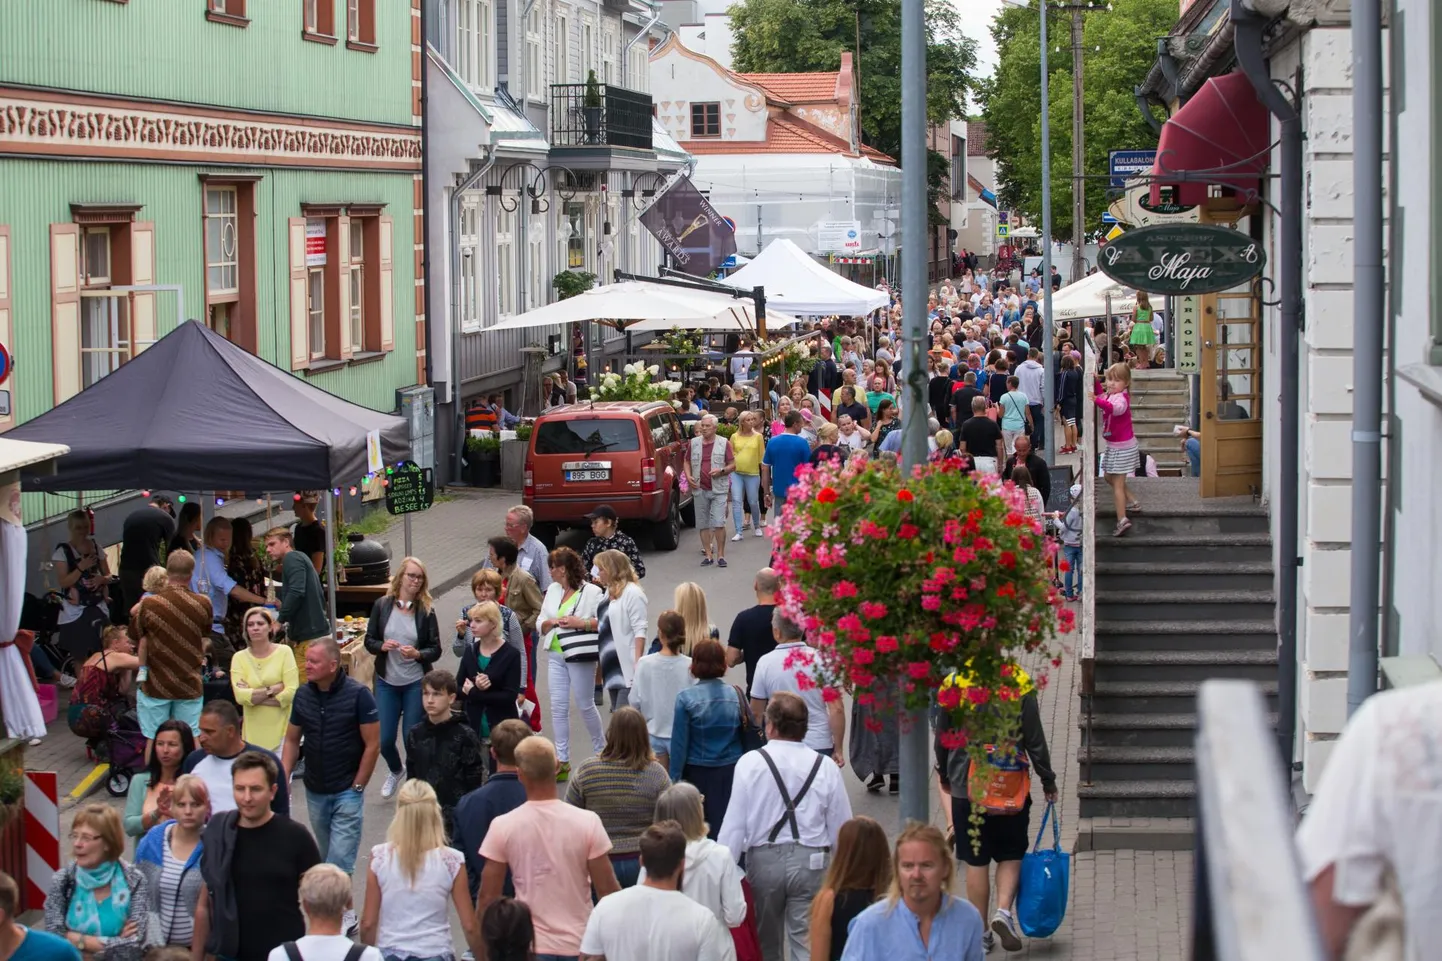 Nädalavahetusel on Pärnus mitu rahvarohket üritust. Linnavalitsus ja terviseamet kutsuvad inimesi hoidma ohutut vahemaad, desinfitseerima käsi ja haigustunnuste ilmnedes koju jääma.